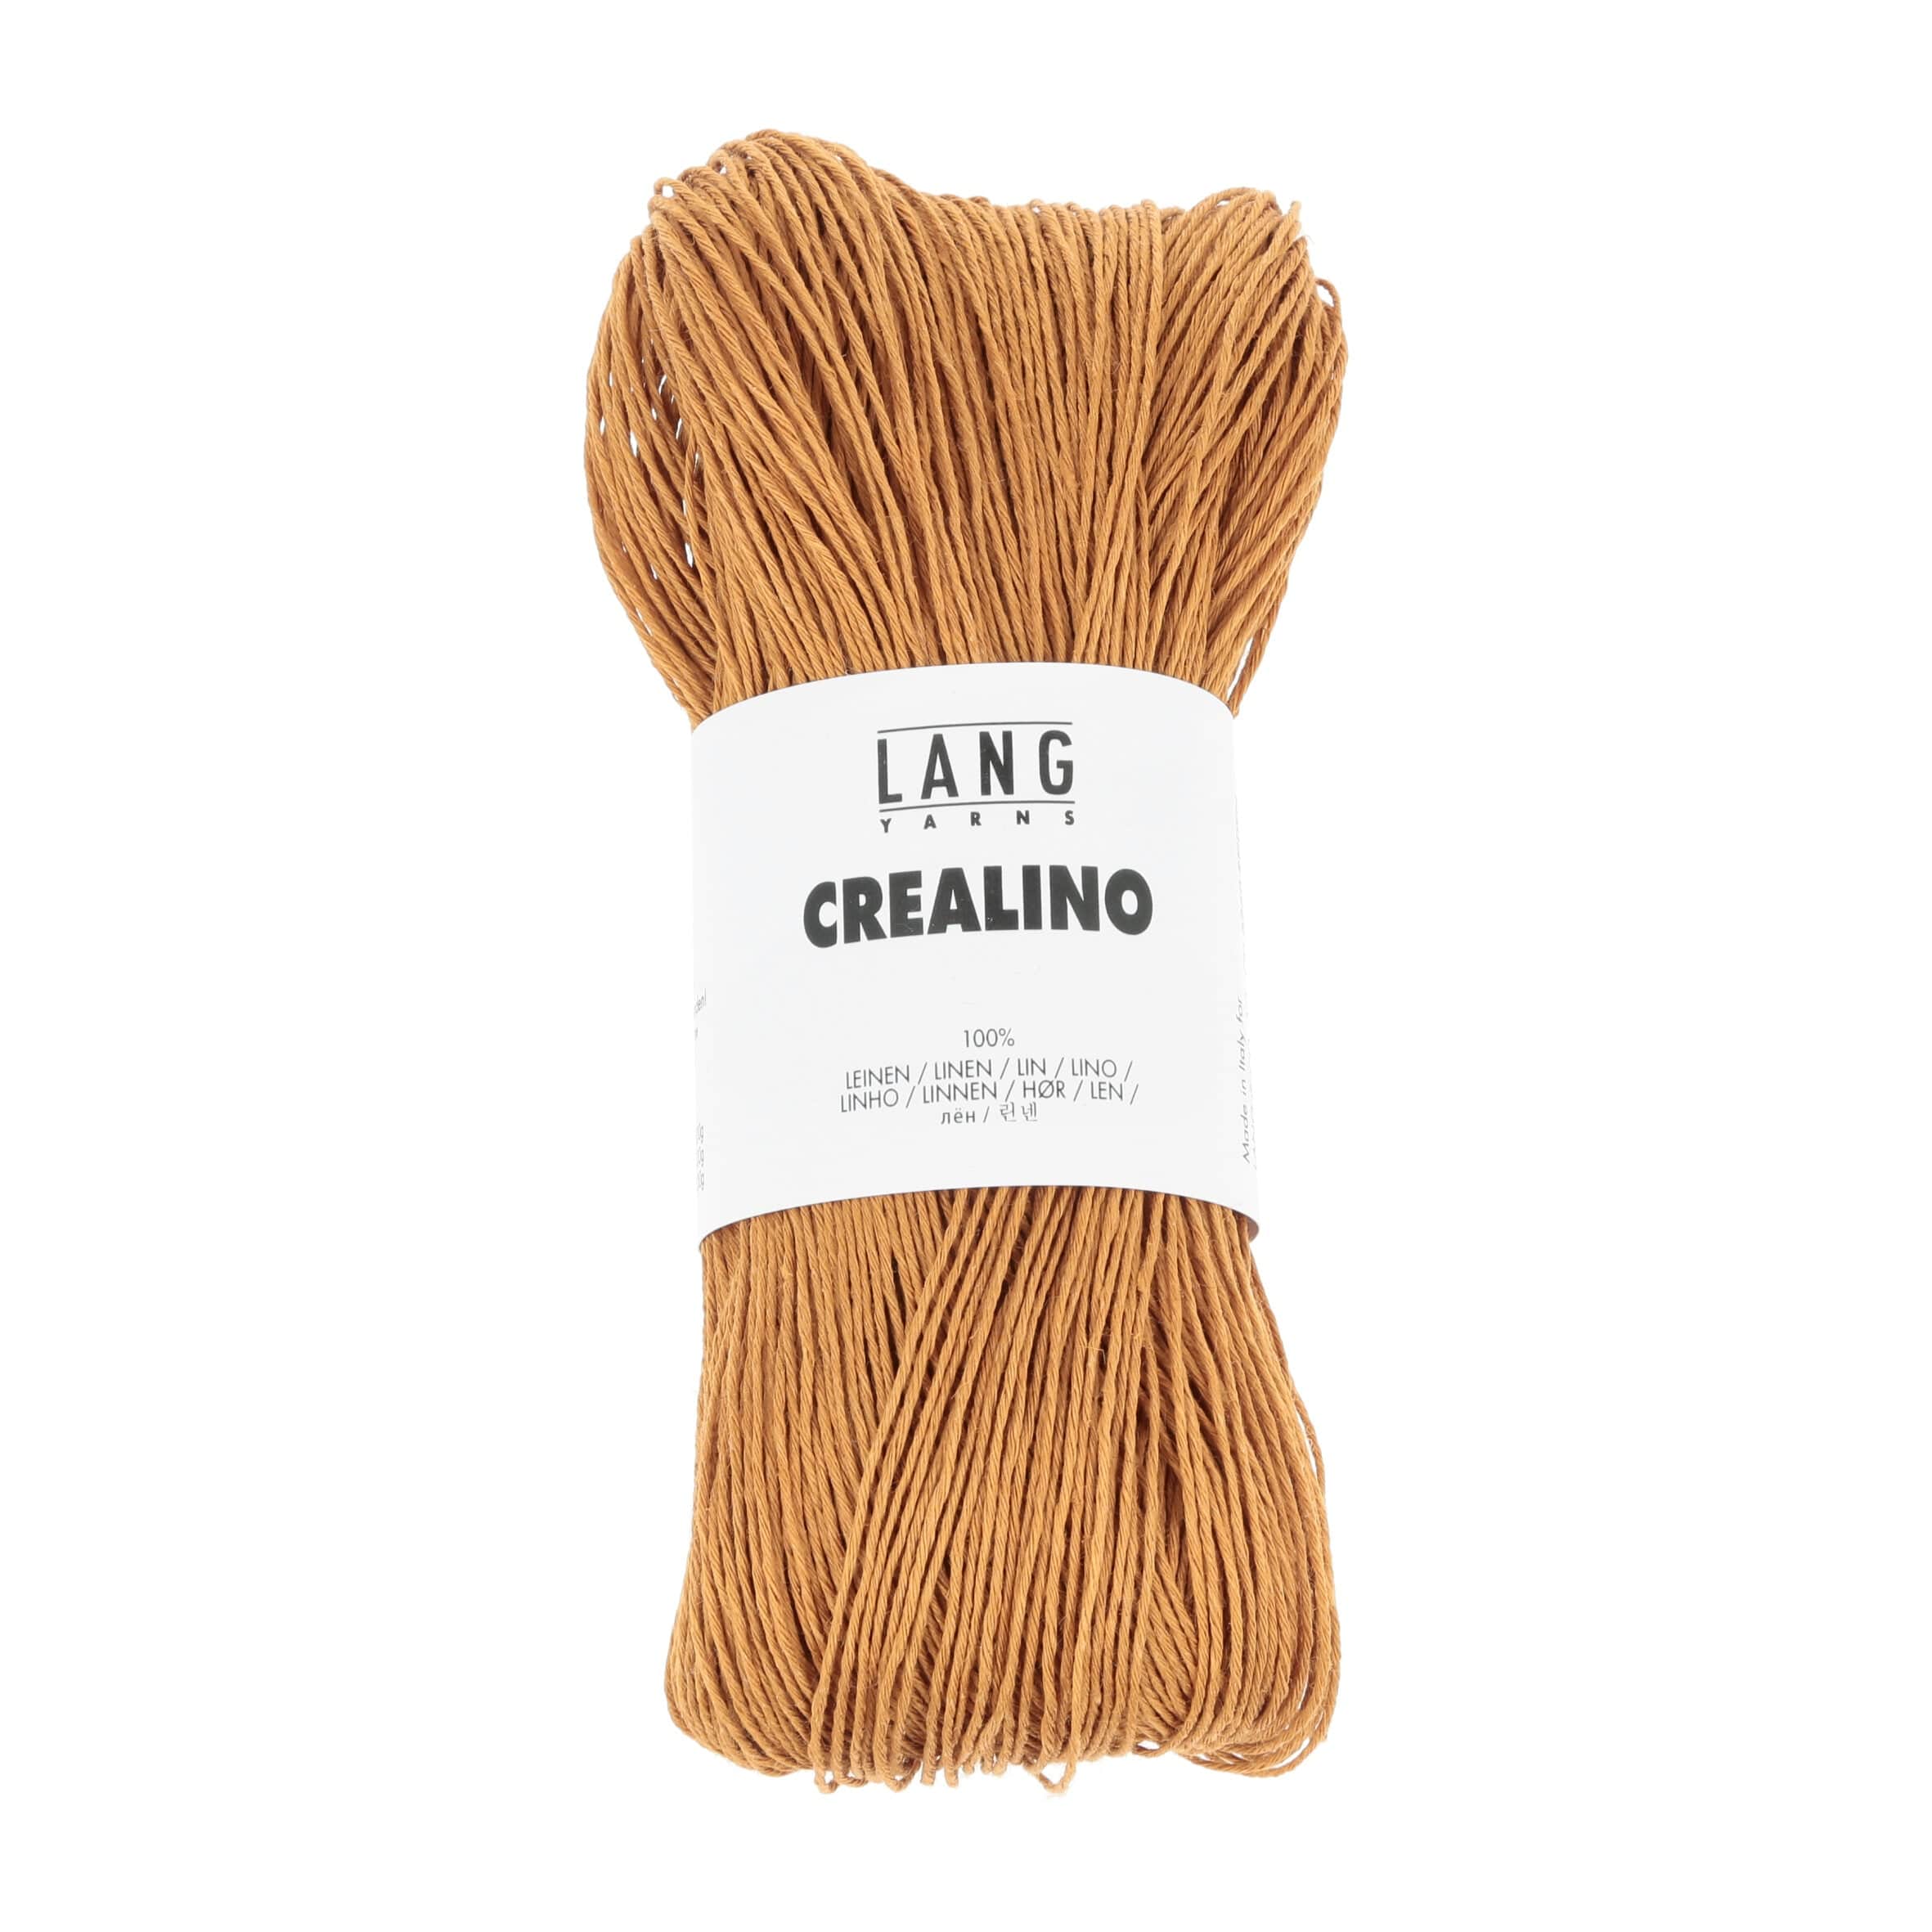 Crealino by Lang Yarns